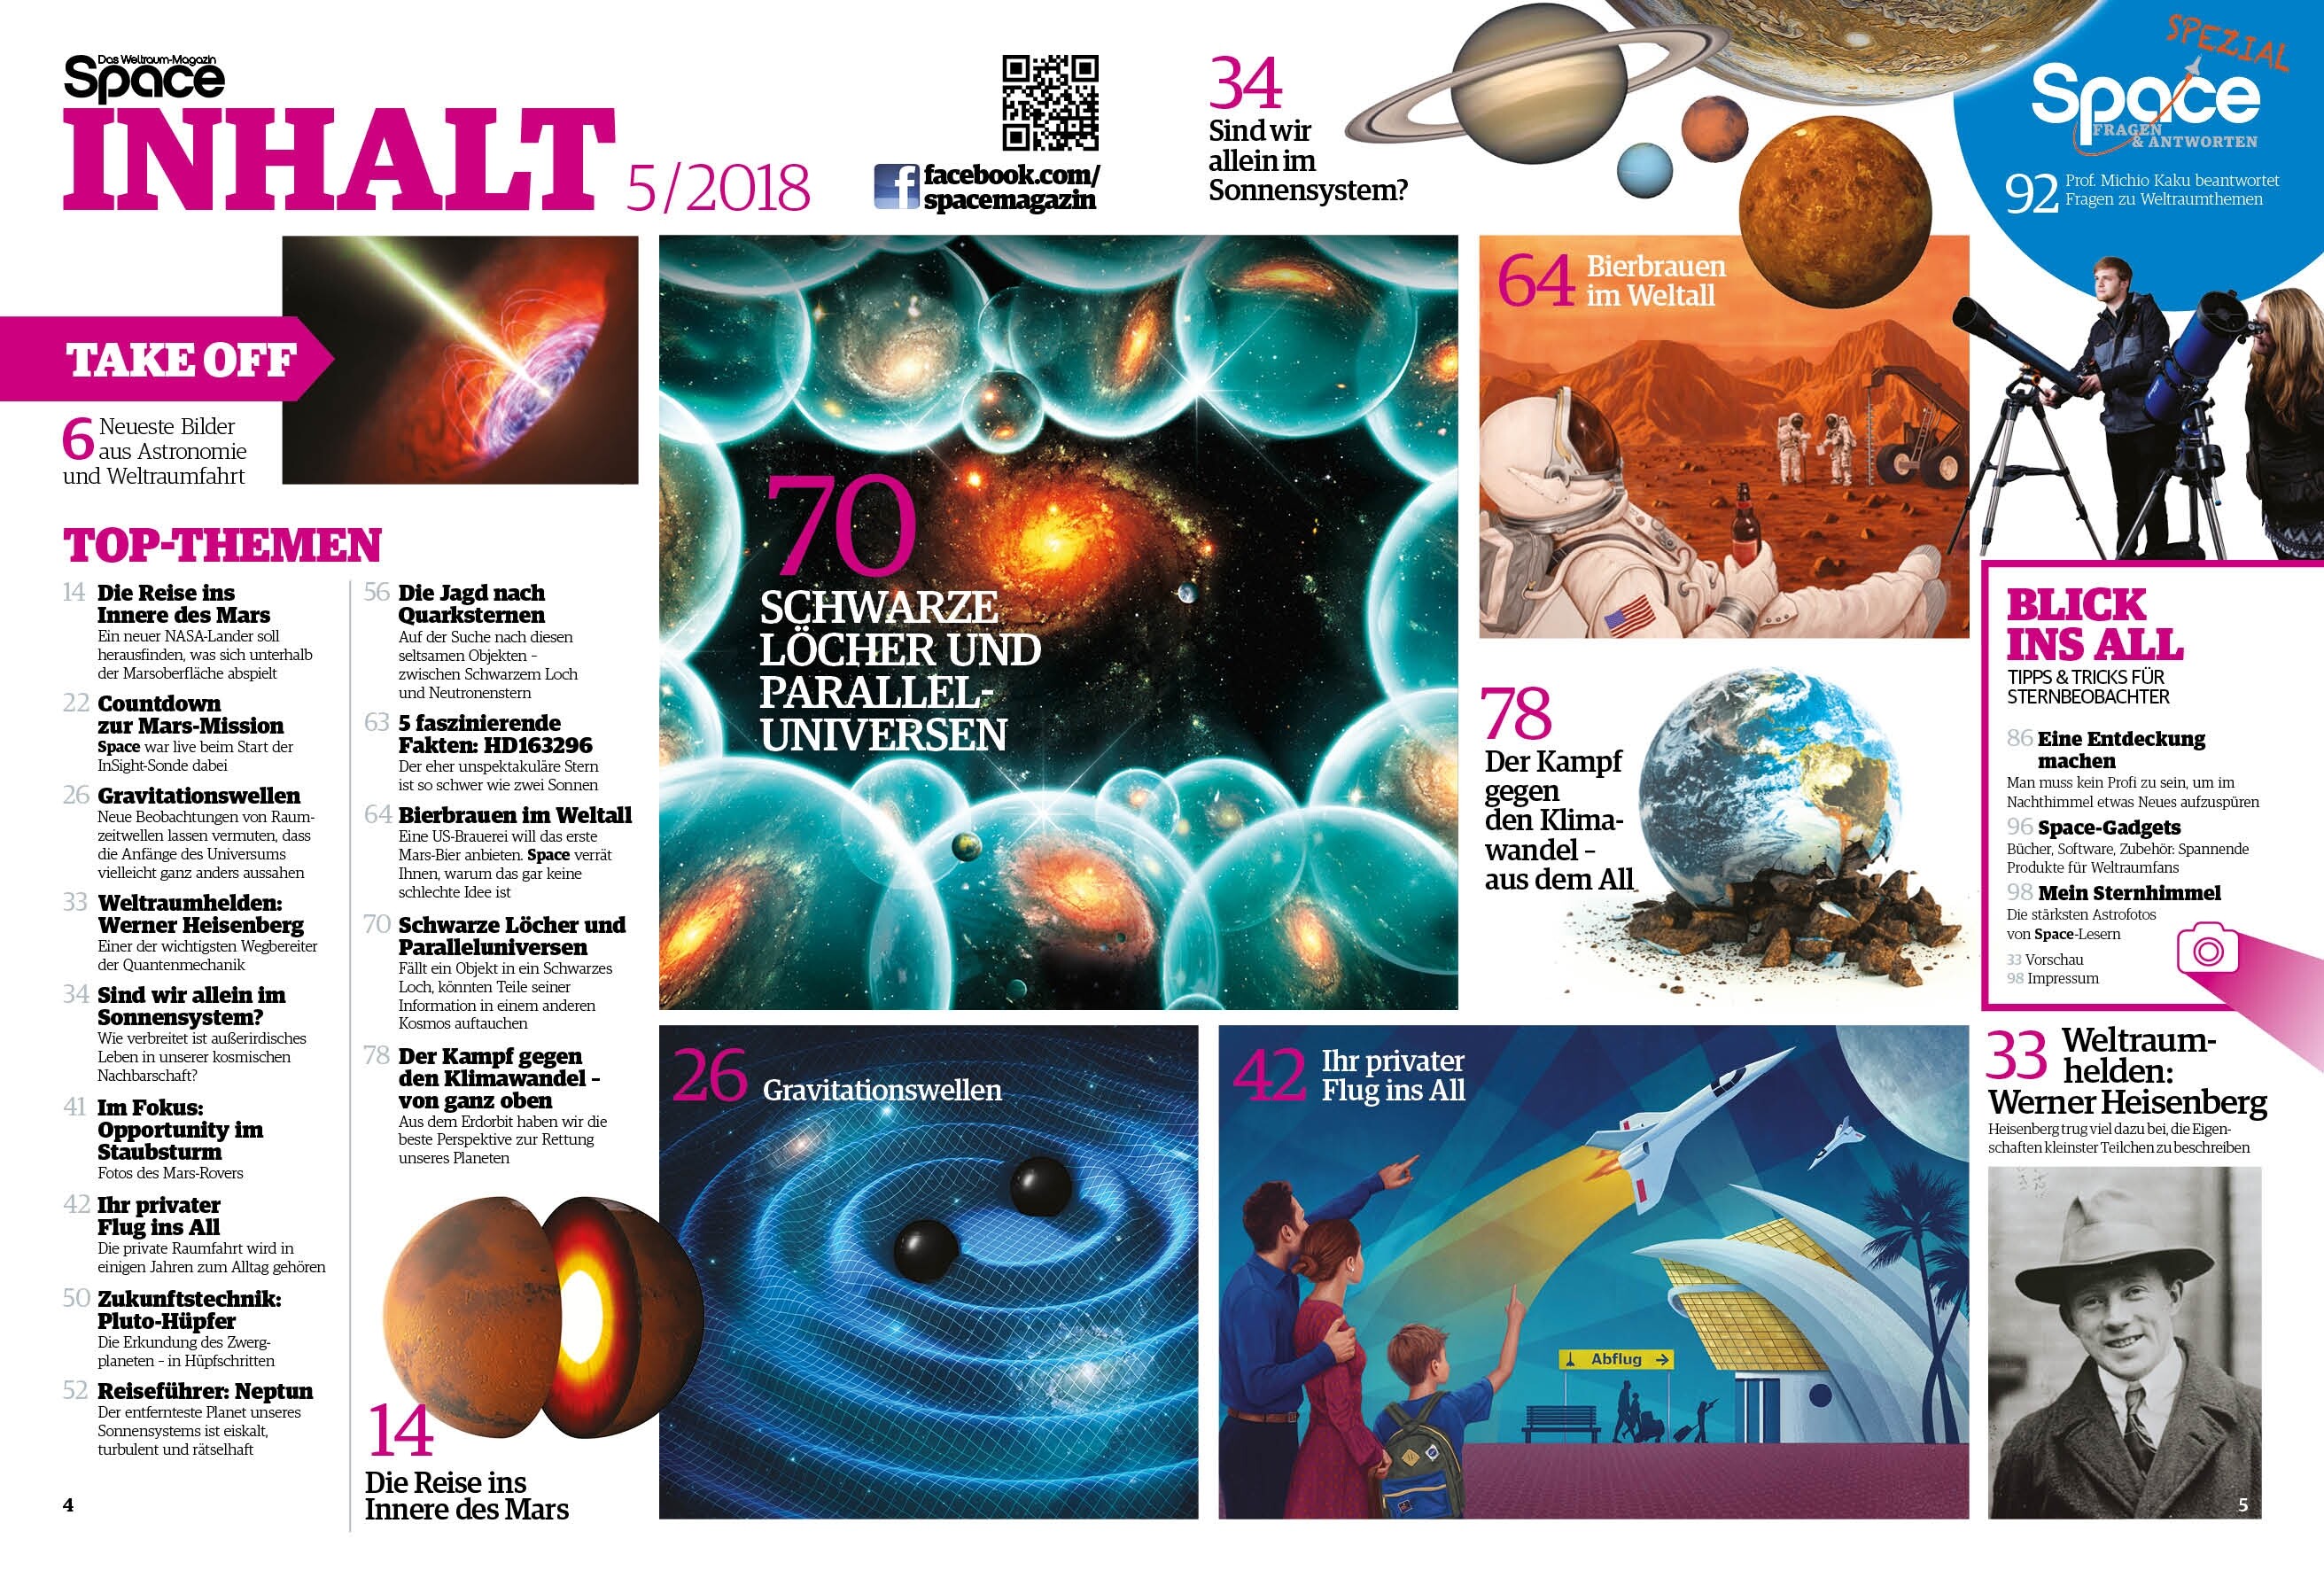 Space Weltraum Magazin 5/2018